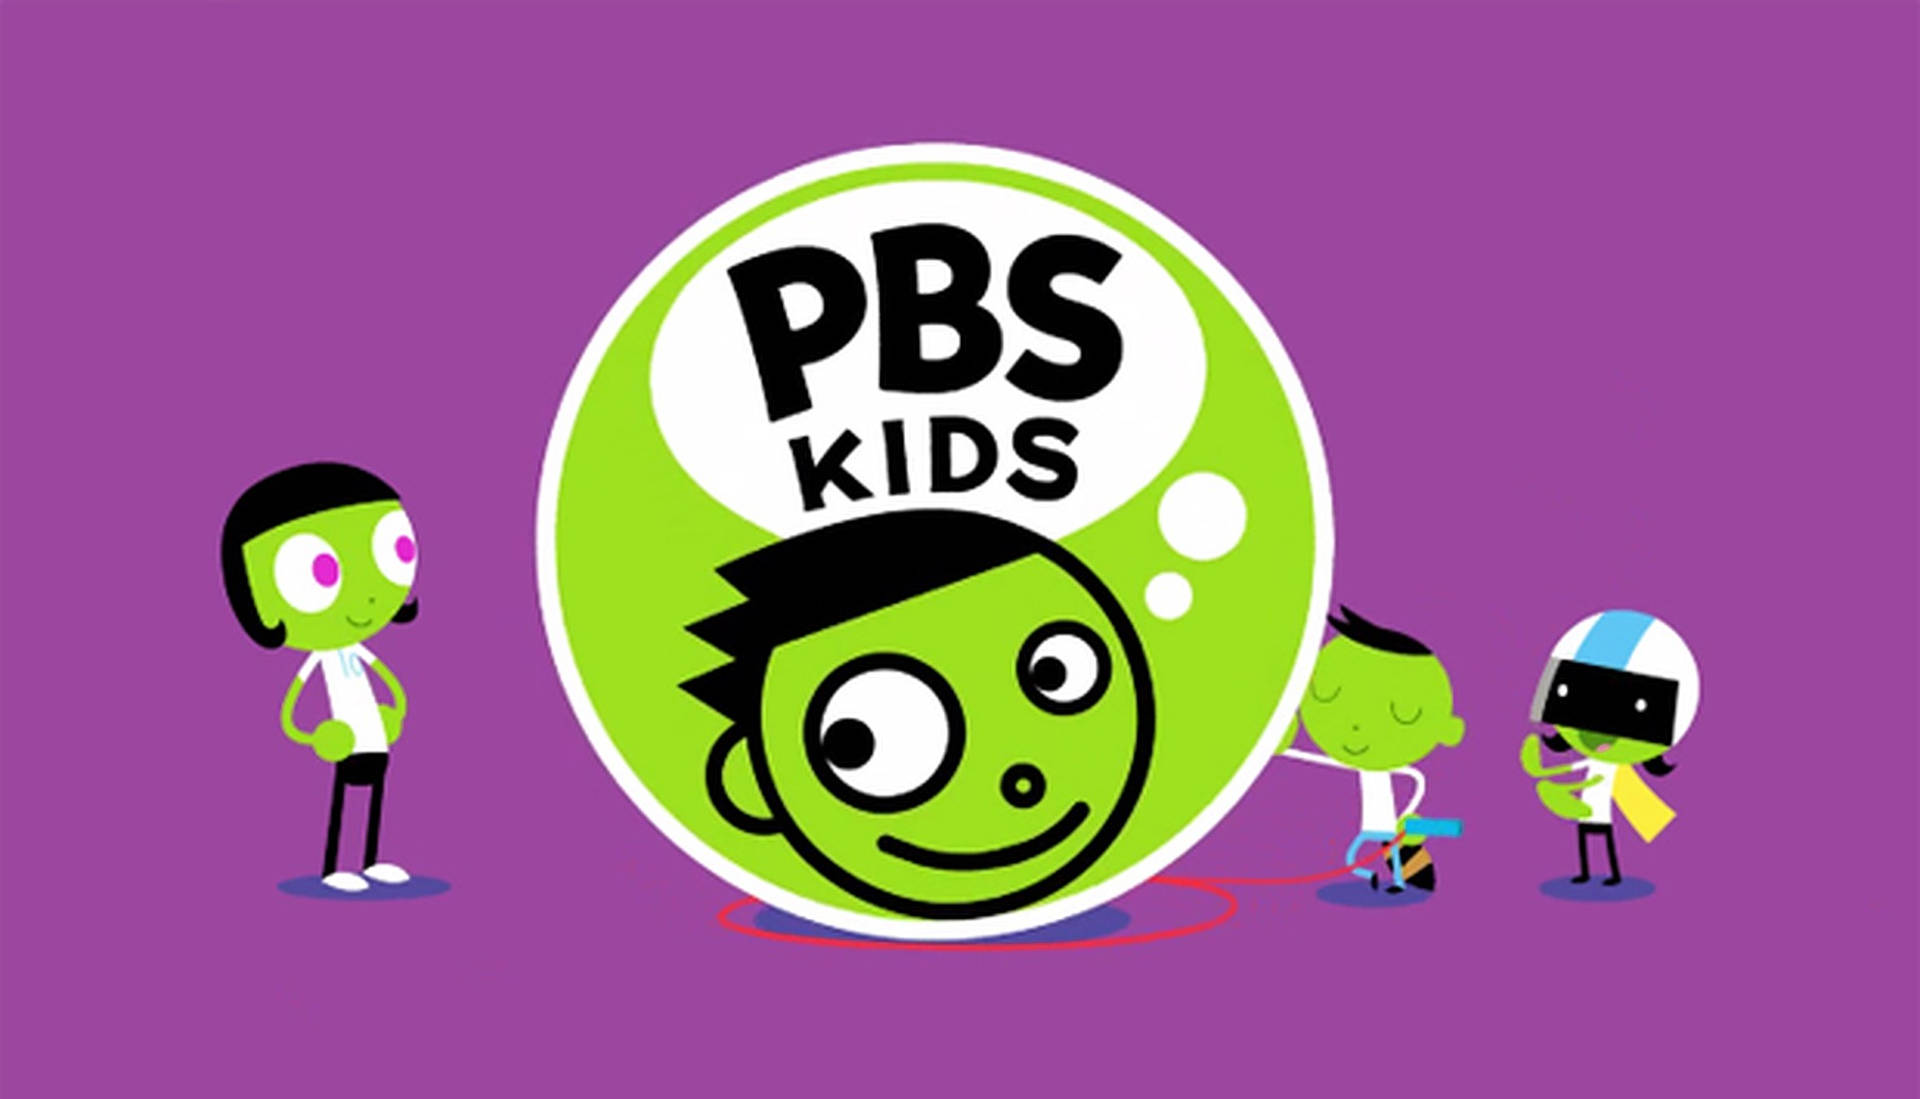 Pbs Kids Background